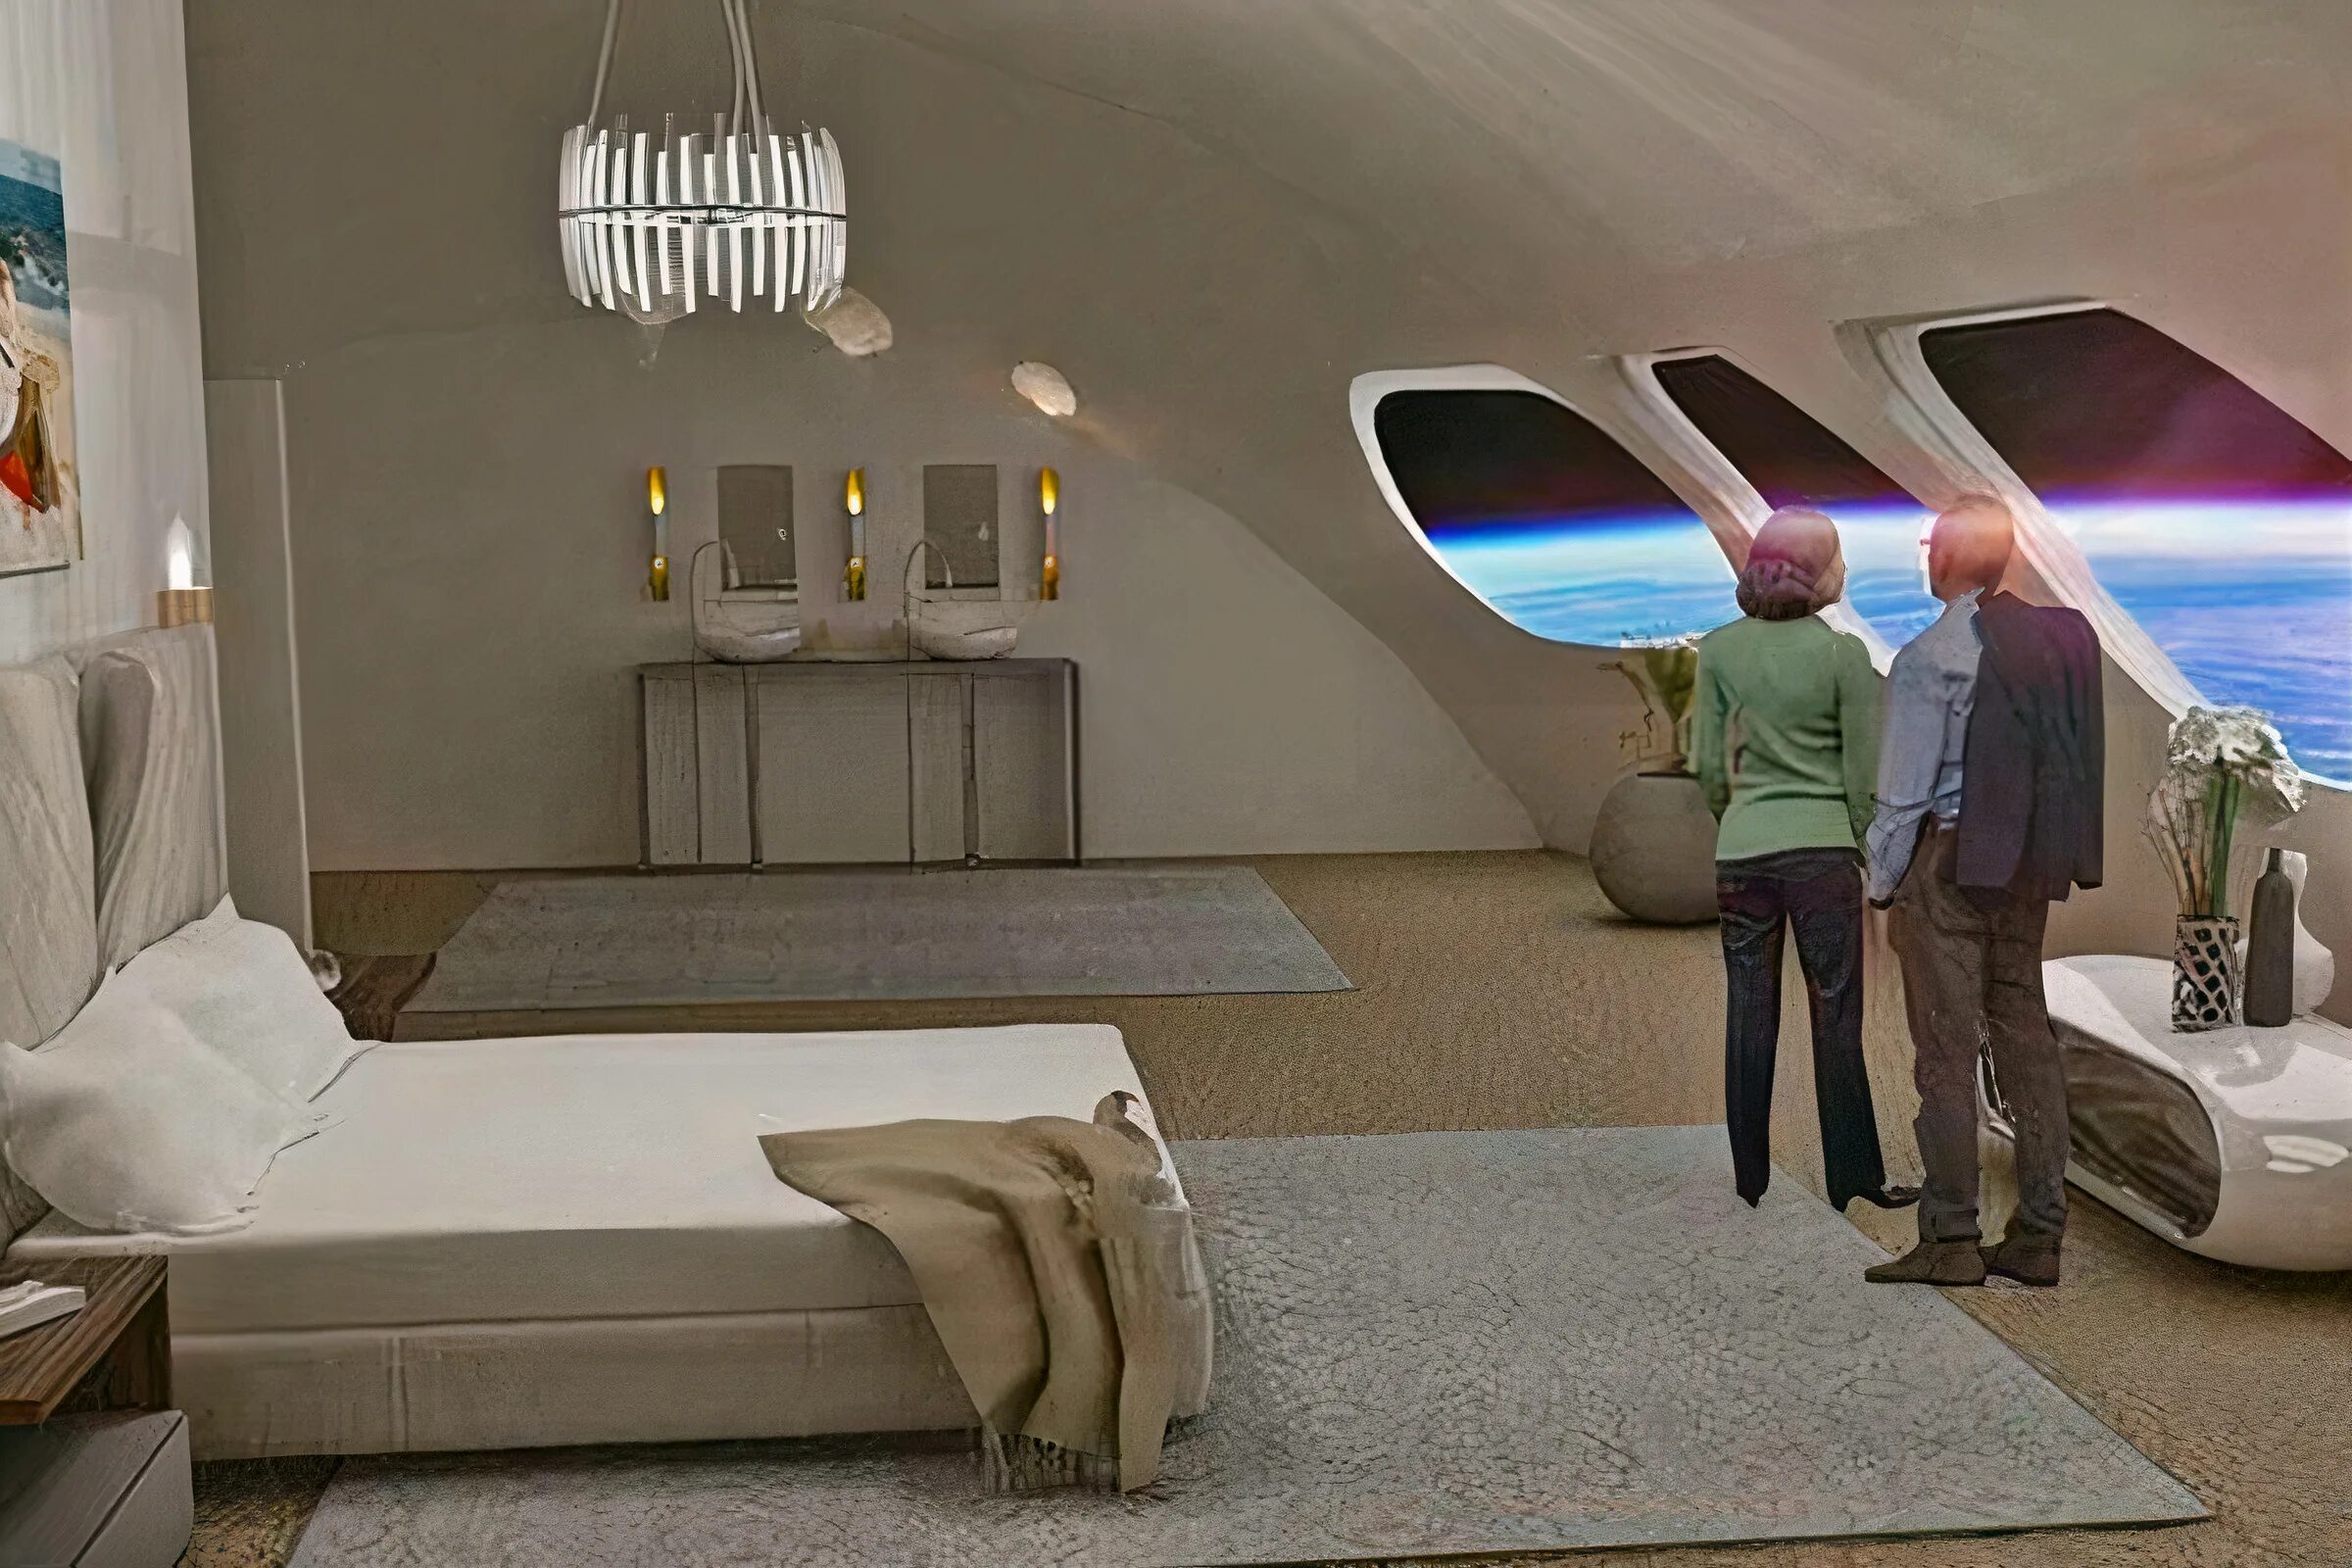 Космический отель Вояджер. Orbital Assembly Corporation космический отель. Отель Вояджер в космосе. Отель в космосе 2027. Почему через 50